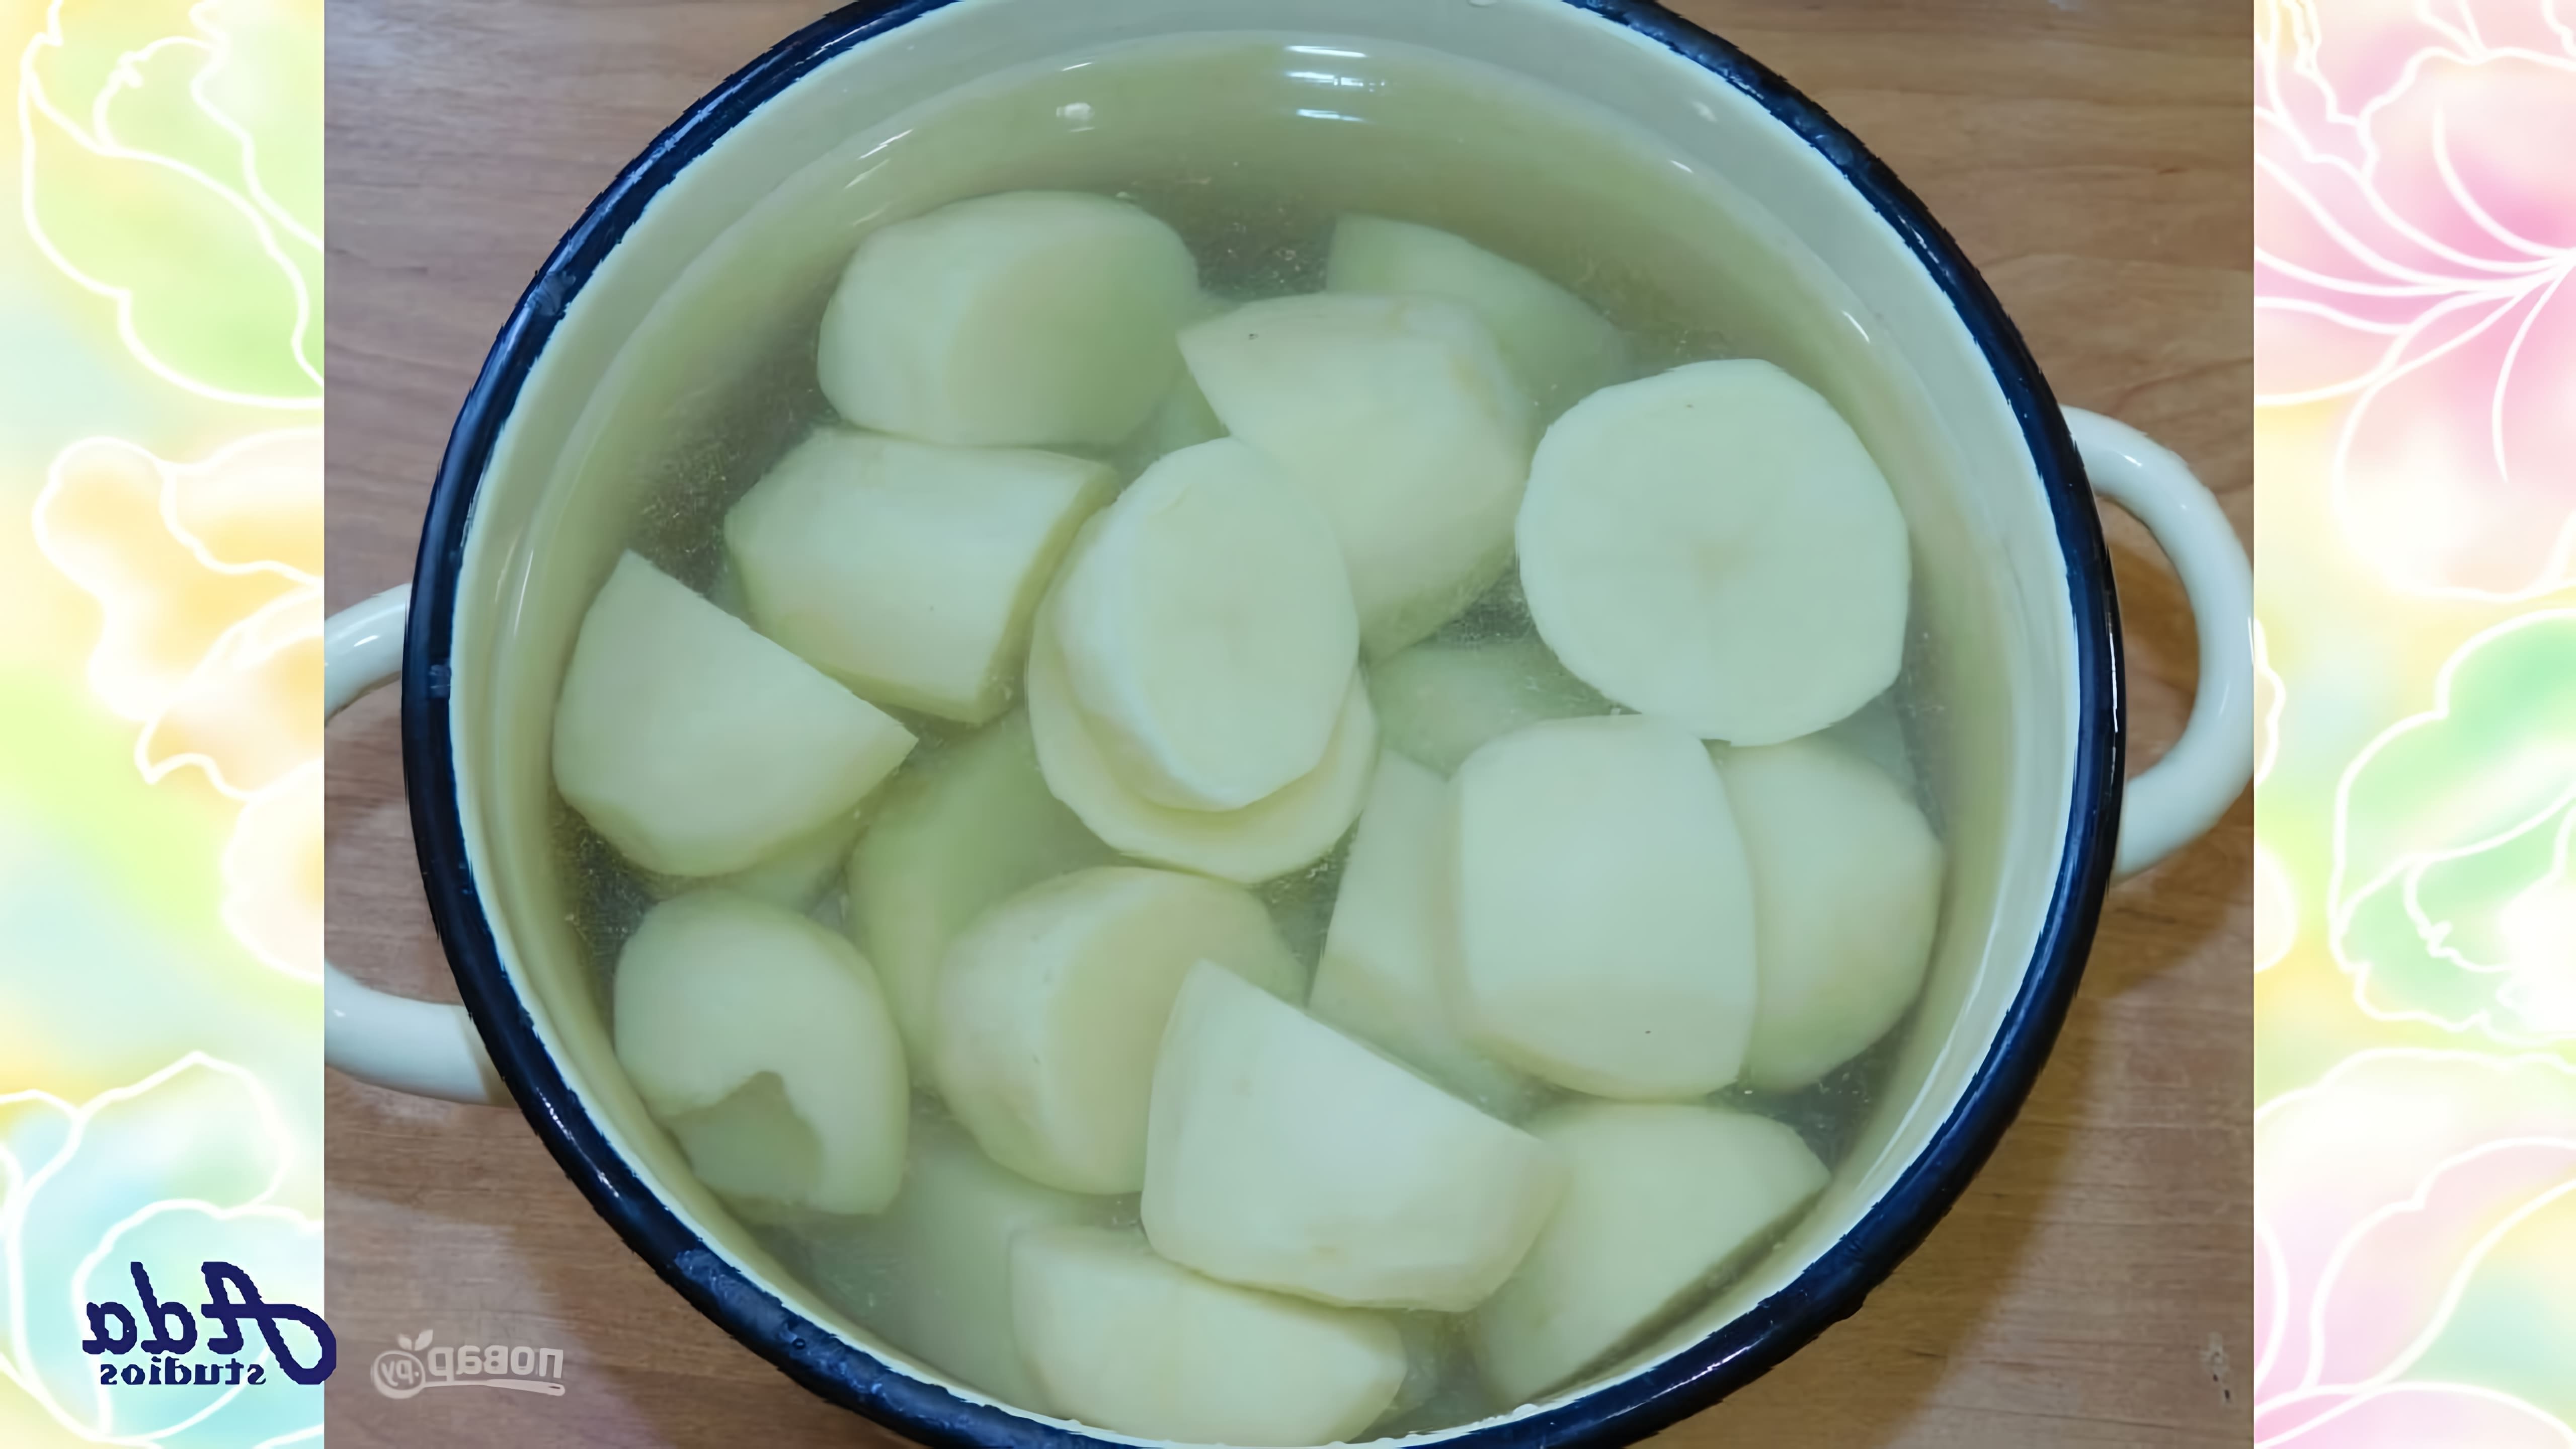 На вкус - суперски○ Картофельное пюре - это популярный гарнир, который готовят во всех семьях○ Для детского или... 